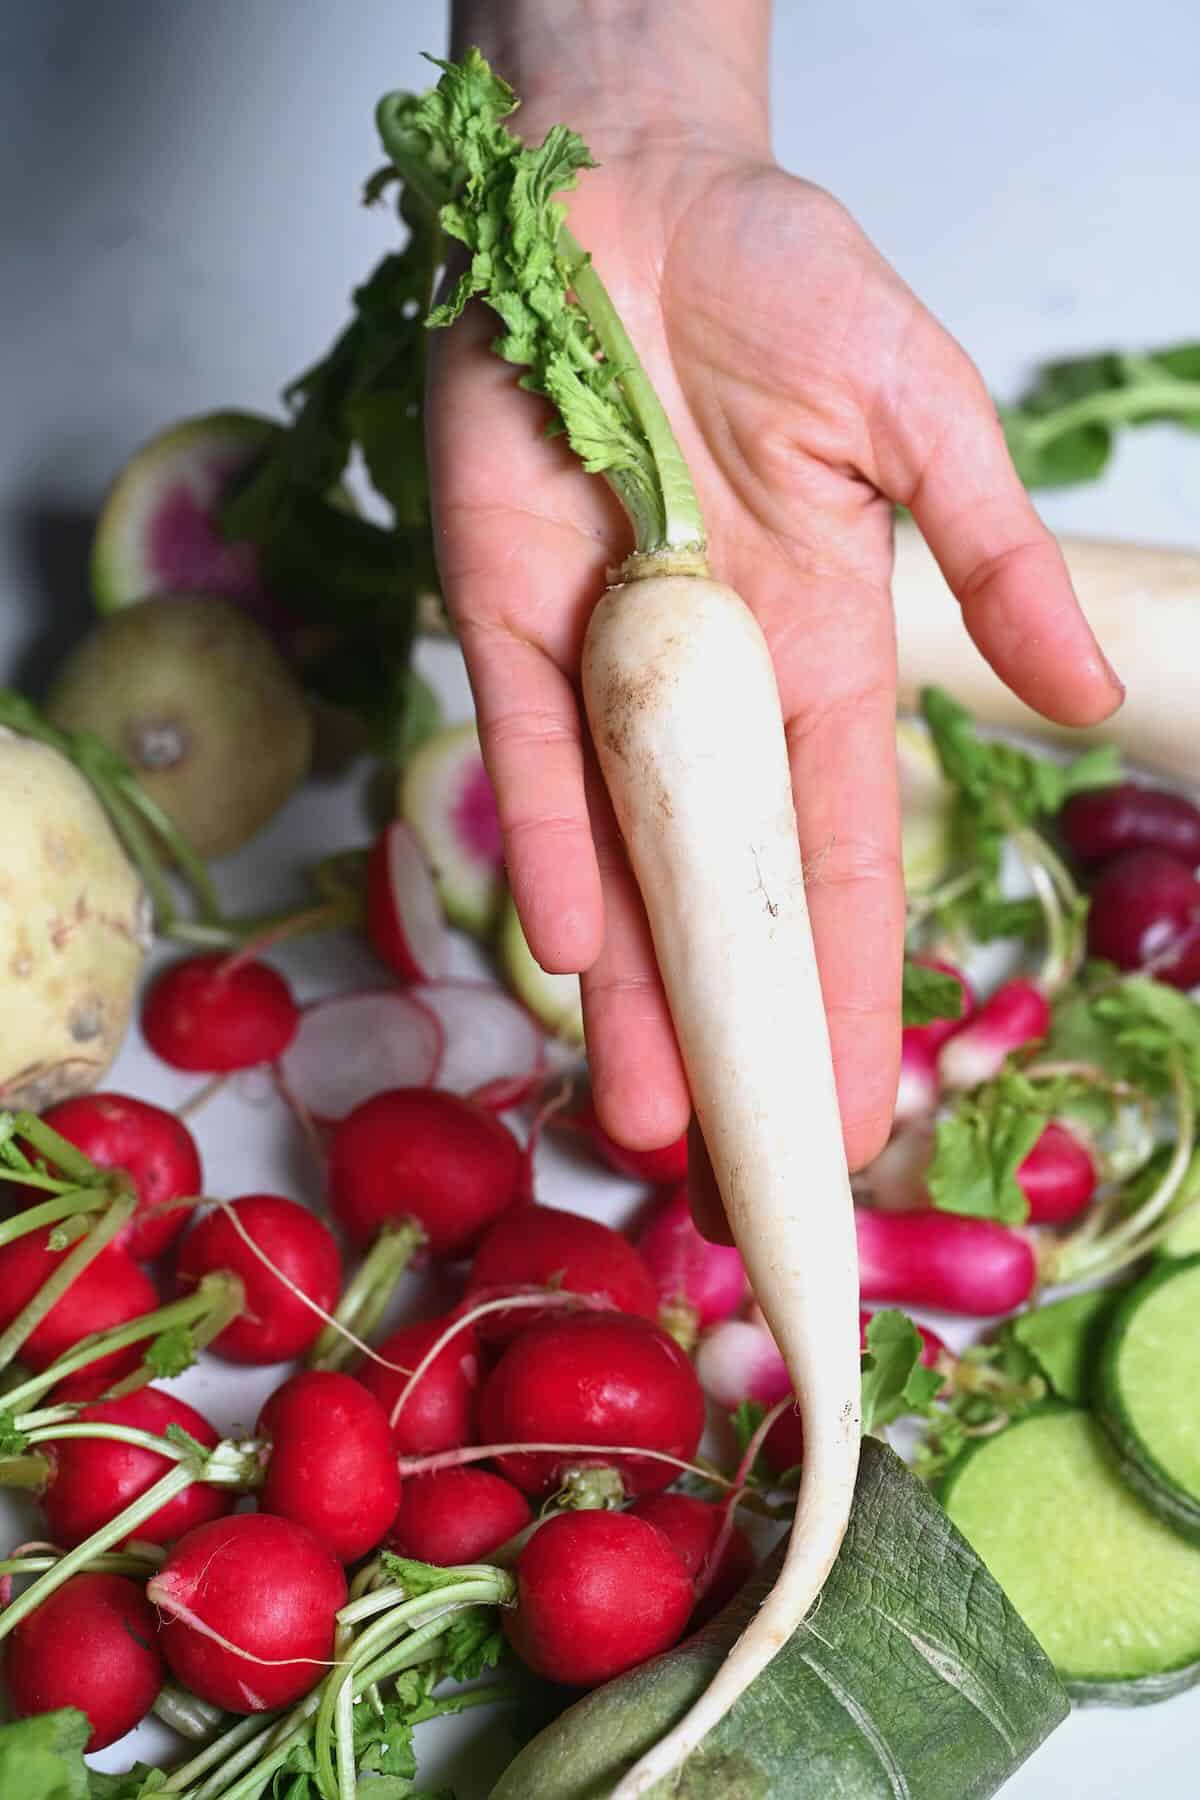 Daikon long white radish